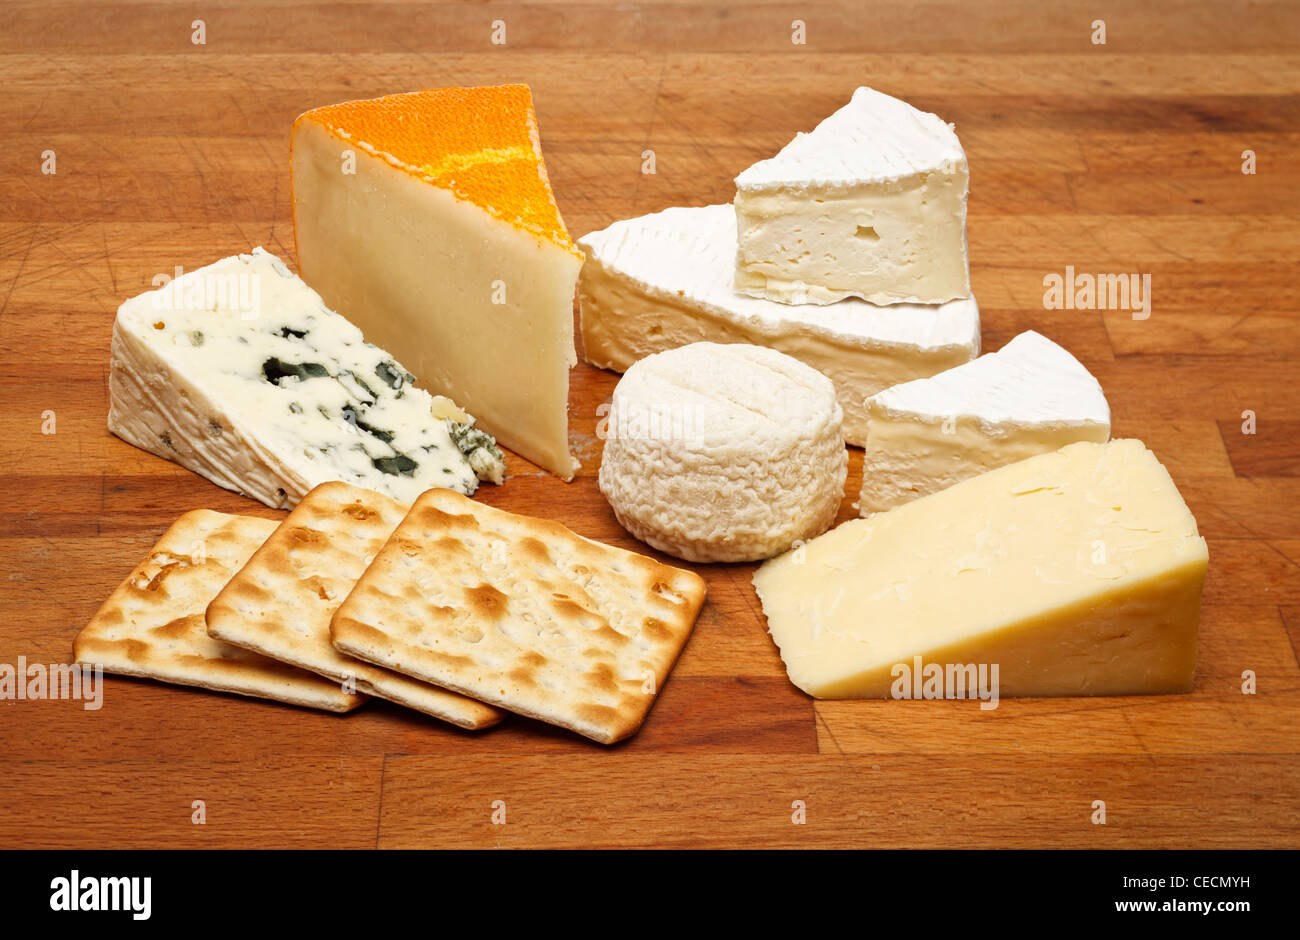 Avec un plateau de fromages camembert, fromage bleu, roquefort, fromage de chèvre Fromages Cheddar et St Paulin Banque D'Images